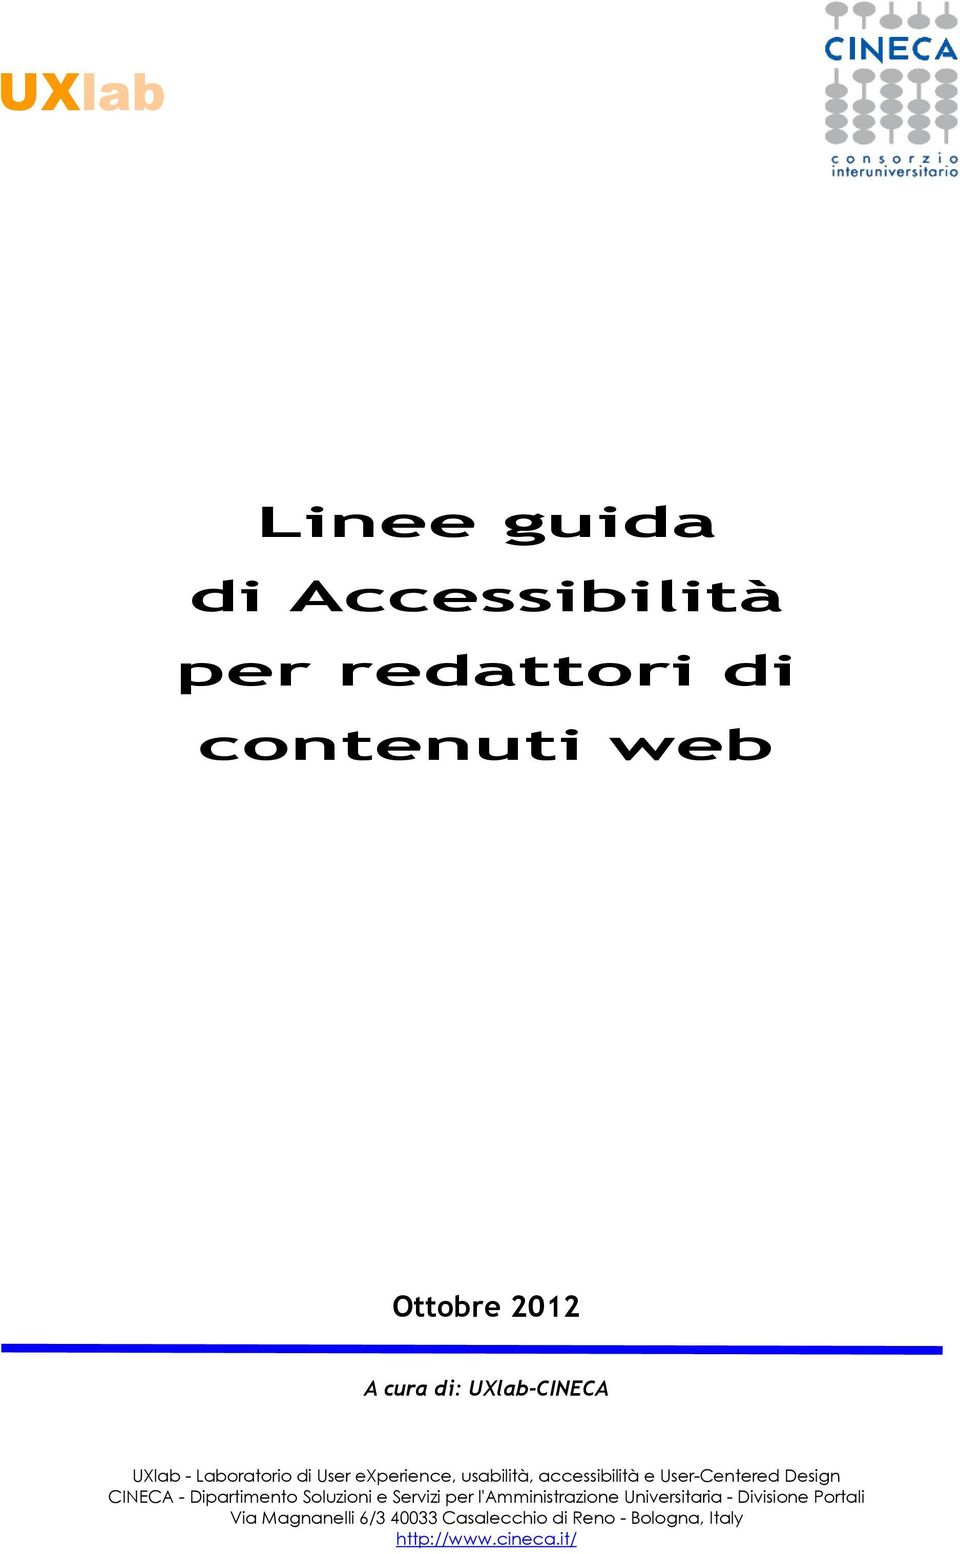 User-Centered Design CINECA - Dipartiment Sluzini e Servizi per l'amministrazine